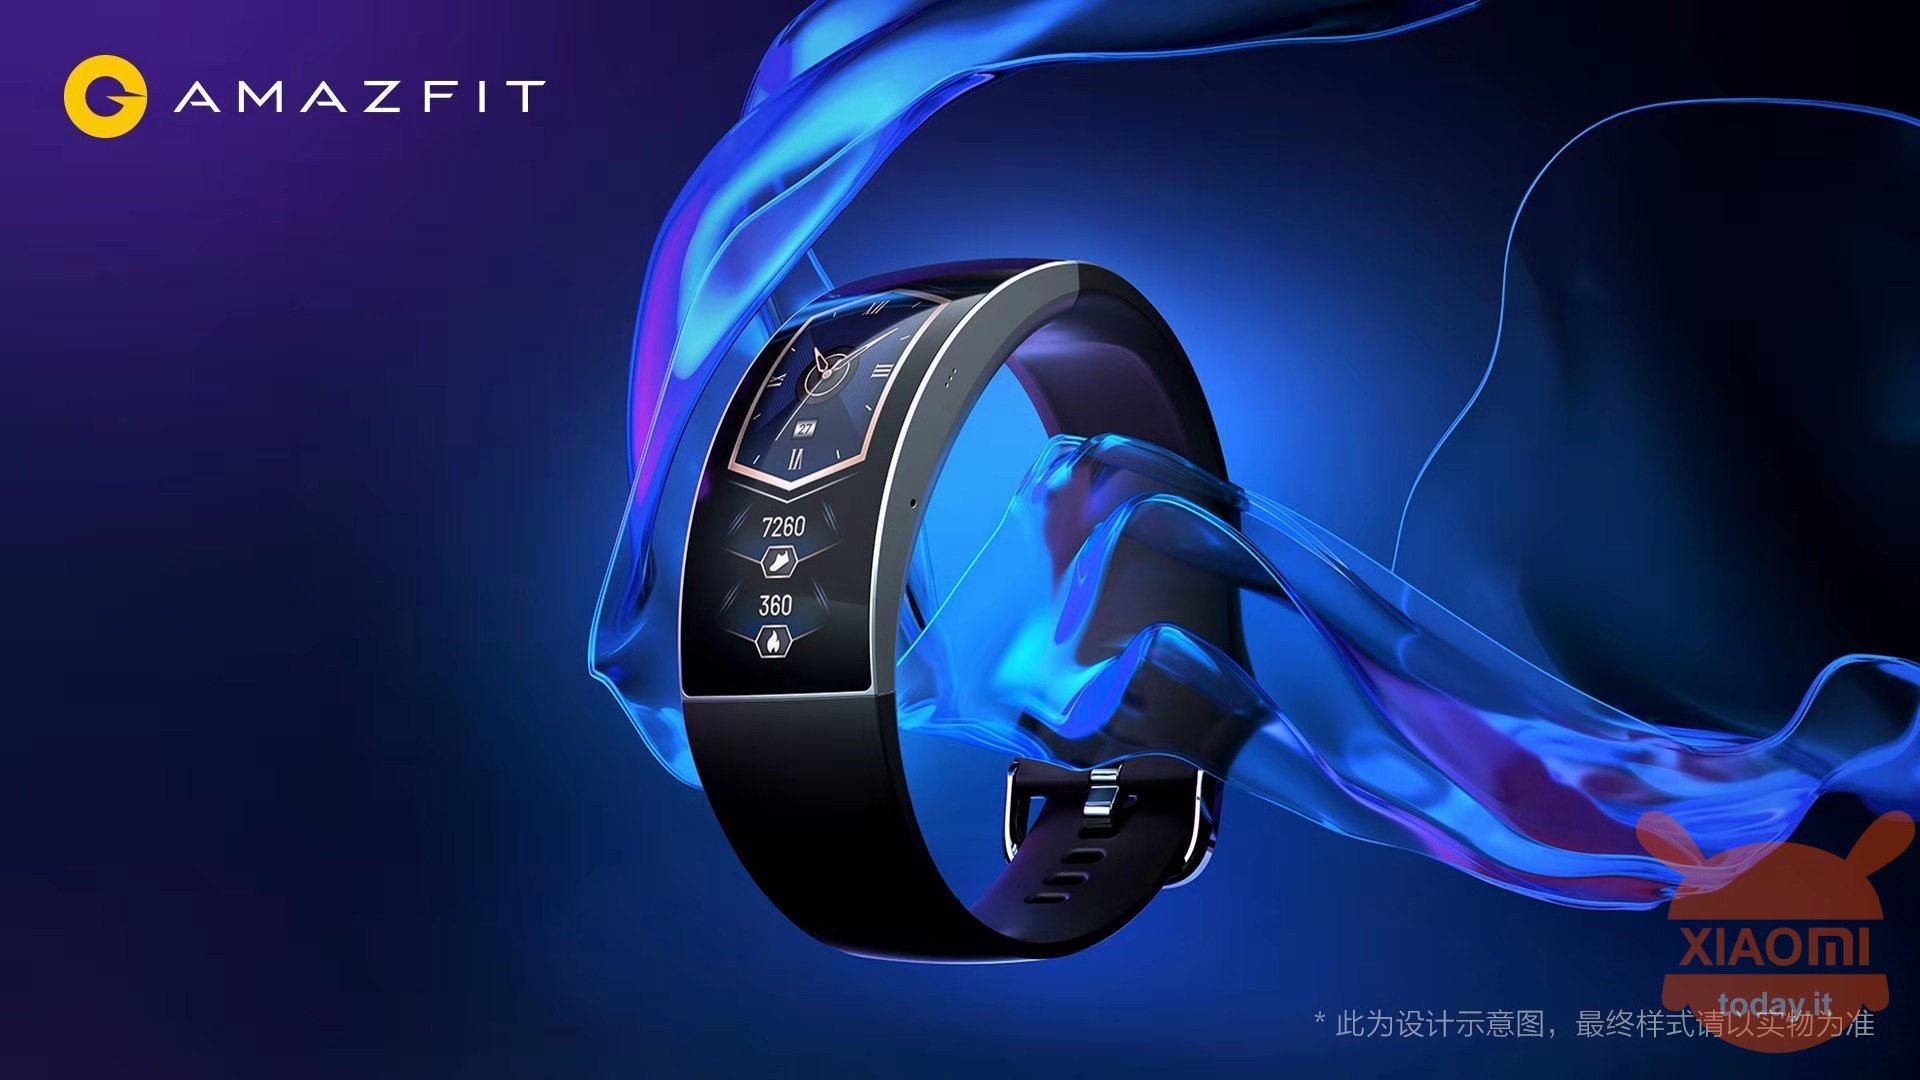 Amazfit X concept smartwatch